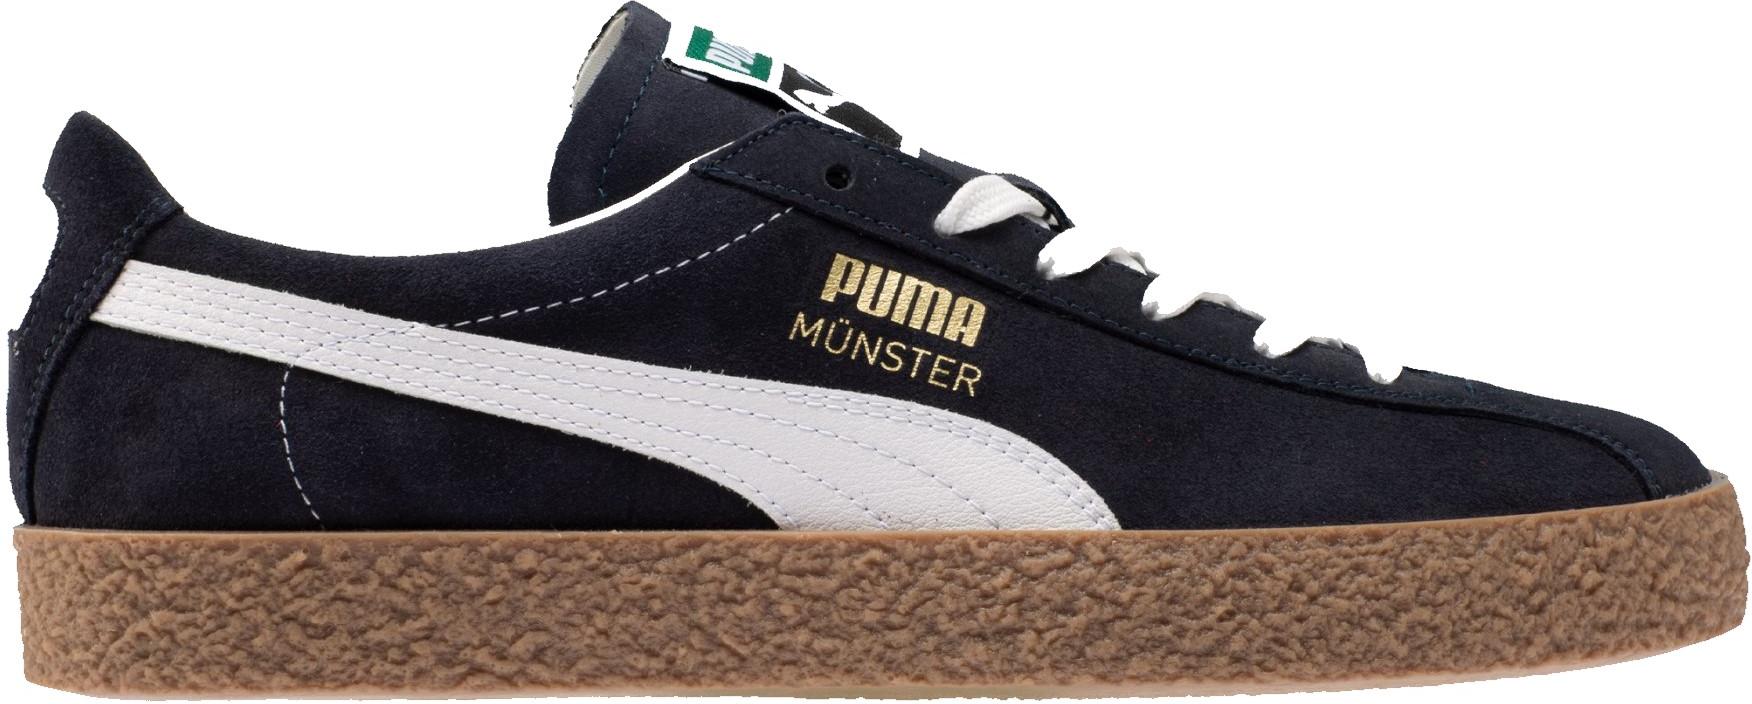 Shoes Puma Münster OG Blue White